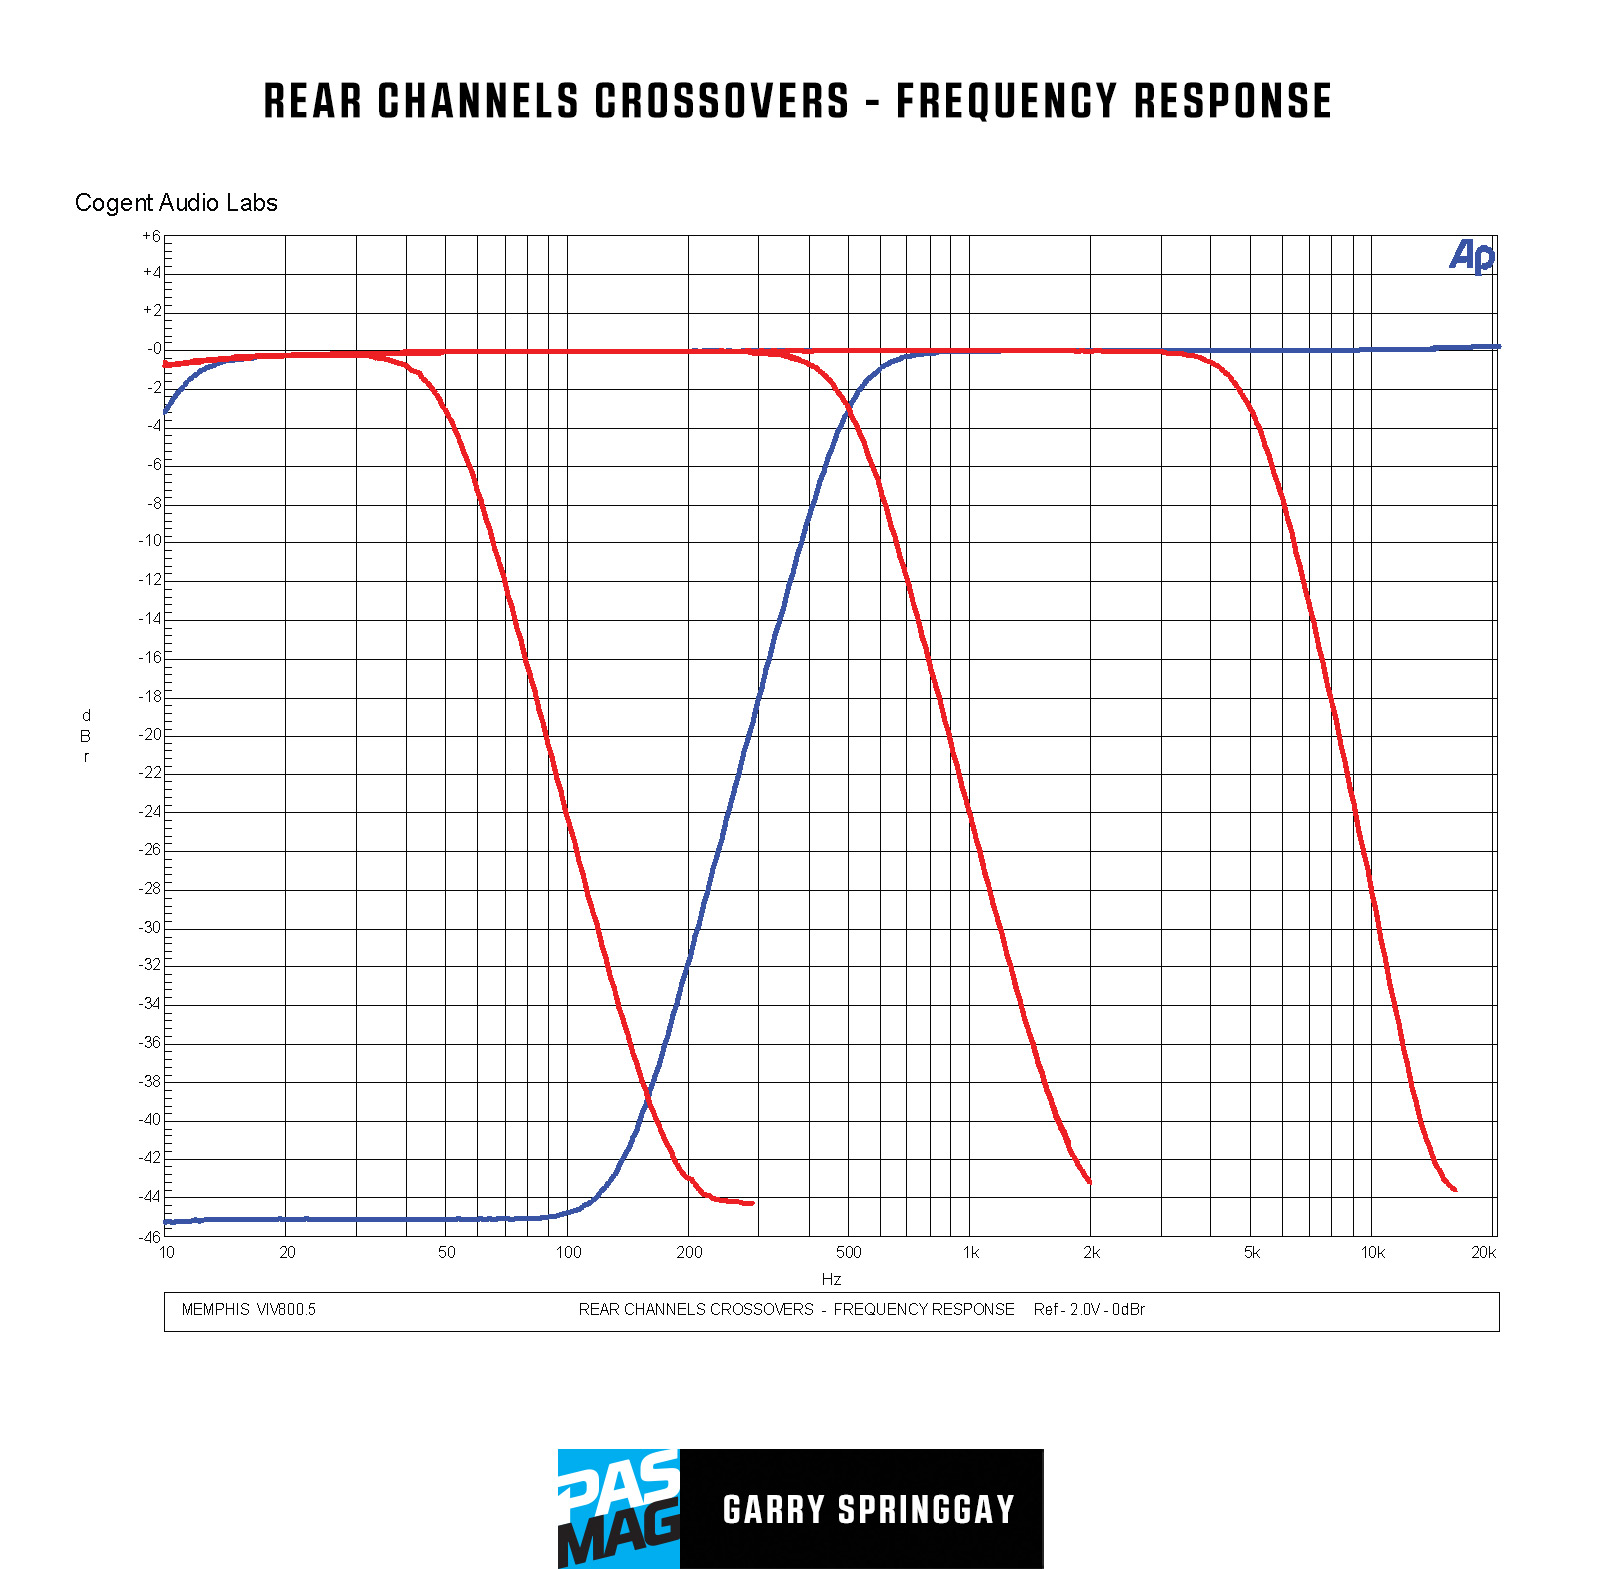 Memphis Car Audio VIV800.5 Graphs 04 REAR CHANNELS CROSSOVERS